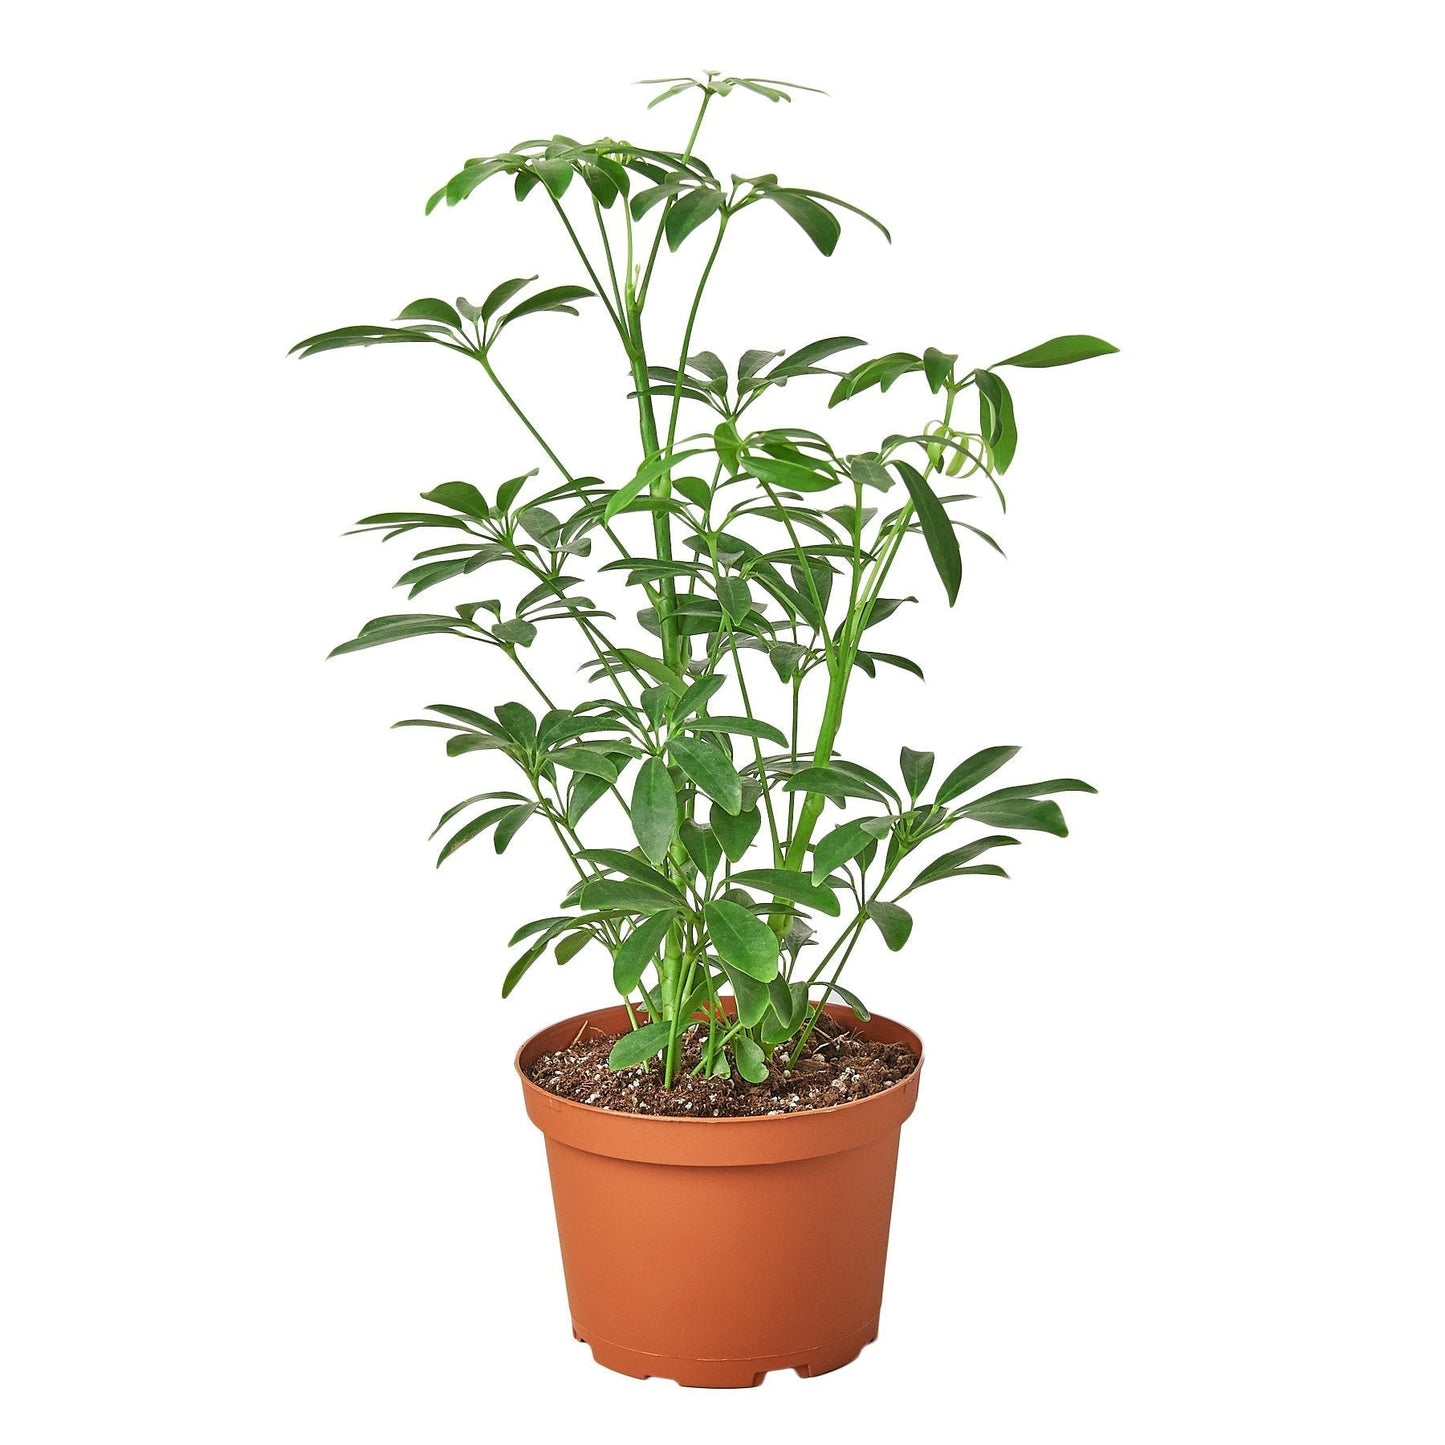 Schefflera Arboricola 'Umbrella' - 6" Pot - NURSERY POT ONLY - One Beleaf Away Plant Studio